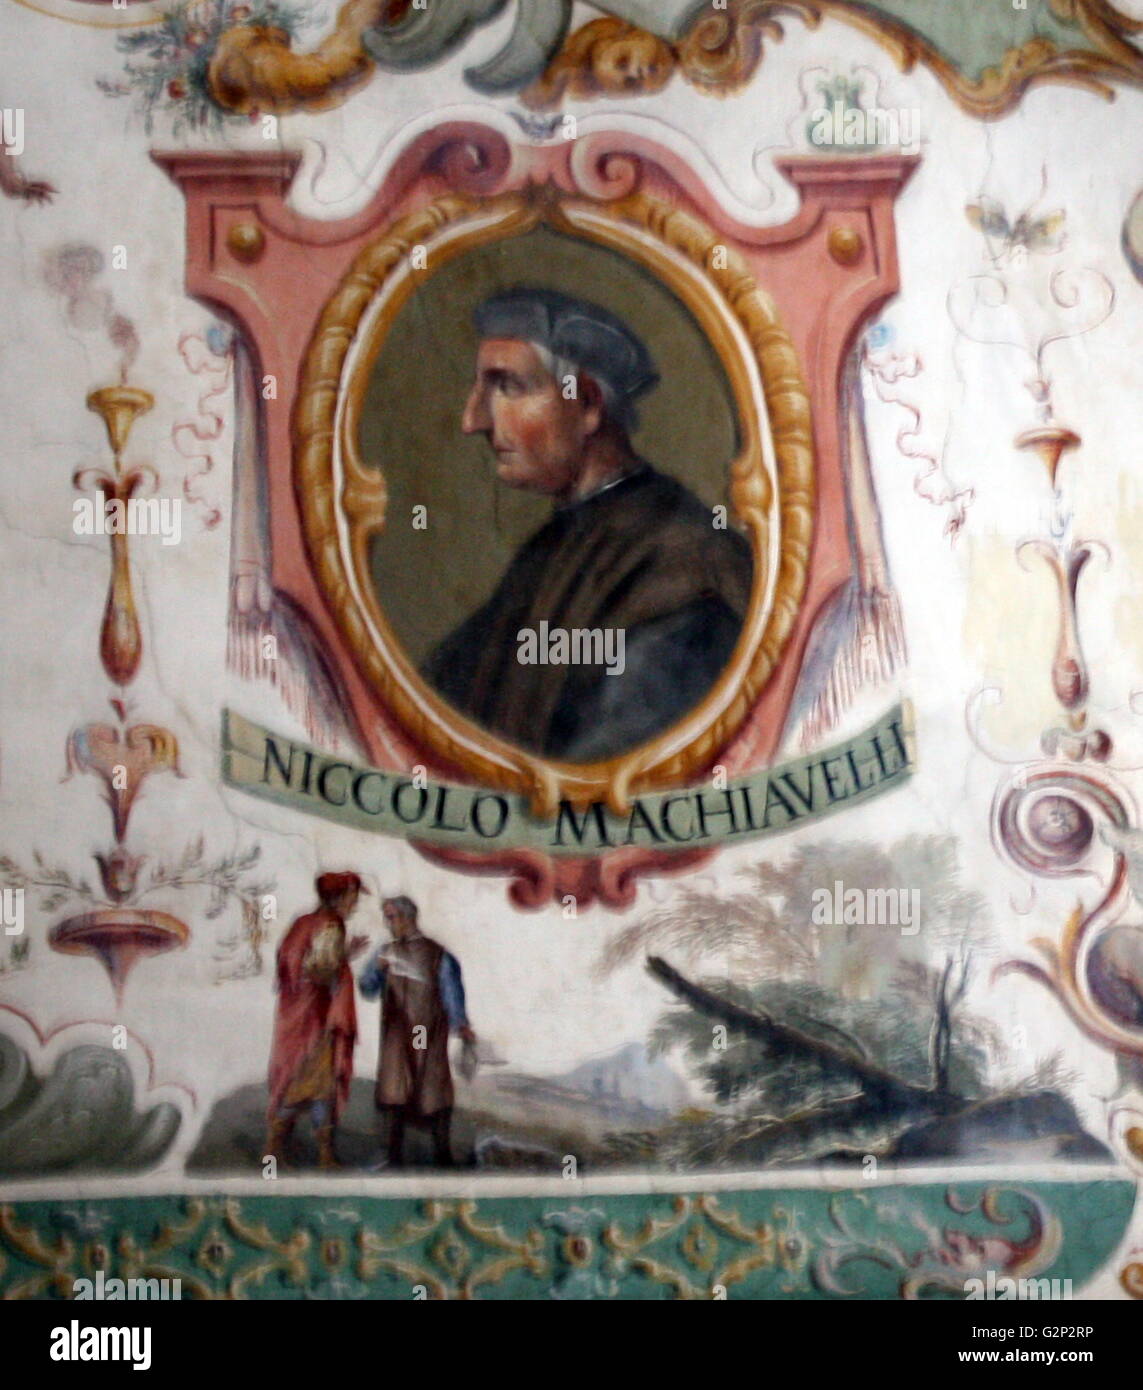 Profilo dipinto ritratto di Niccol‗ di Bernardo dei Machiavelli, storico italiano, politico, umanista, Diplomat, filosofo e scrittore in base a Firenze durante il Rinascimento. Foto Stock